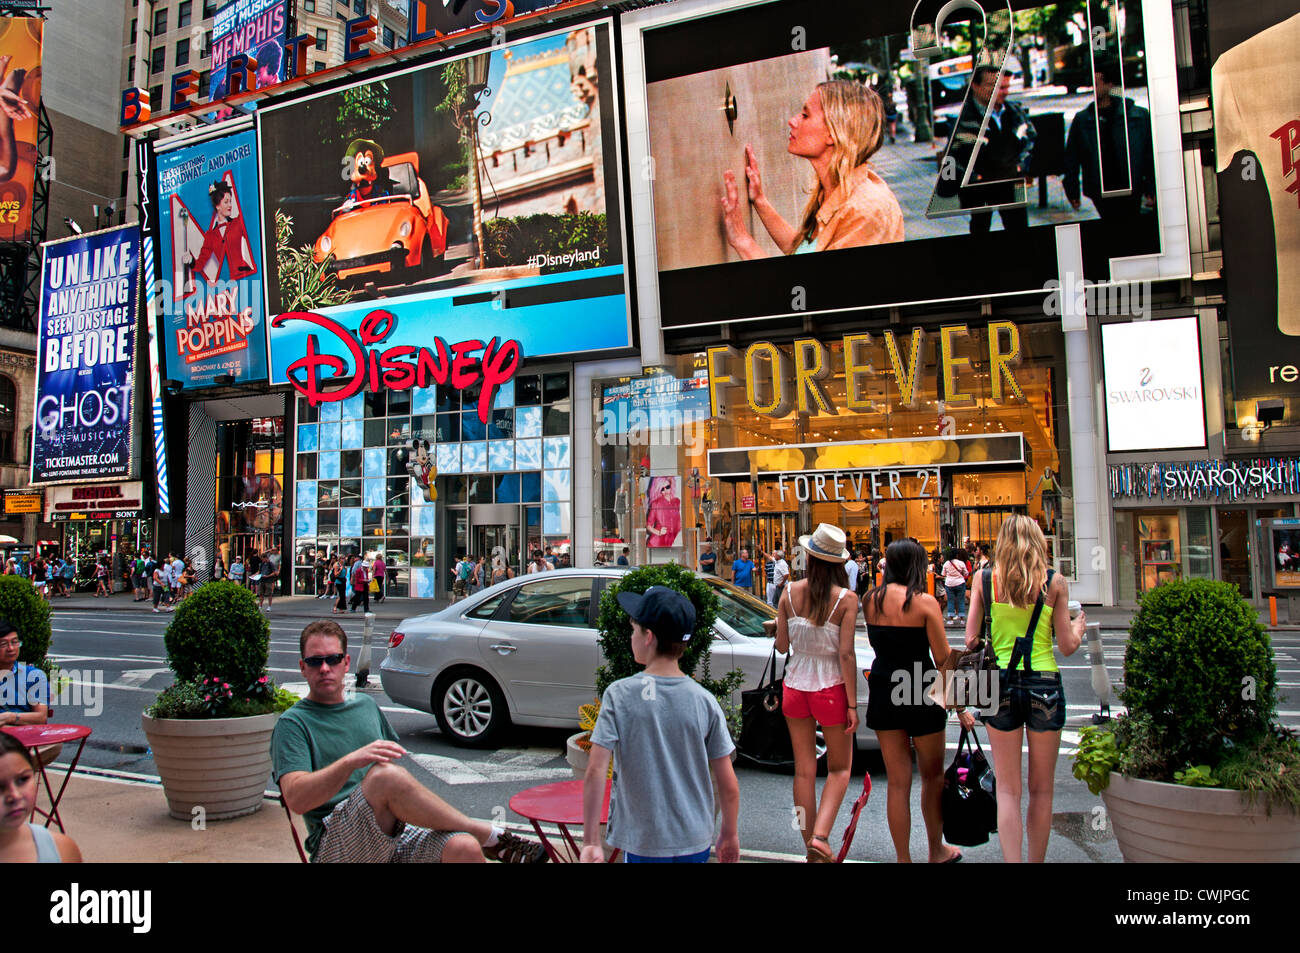 Times Square Broadway New York City Theatre Music, Times Square est un quartier de divertissements et d'affaires de New York City, aux États-Unis. Banque D'Images